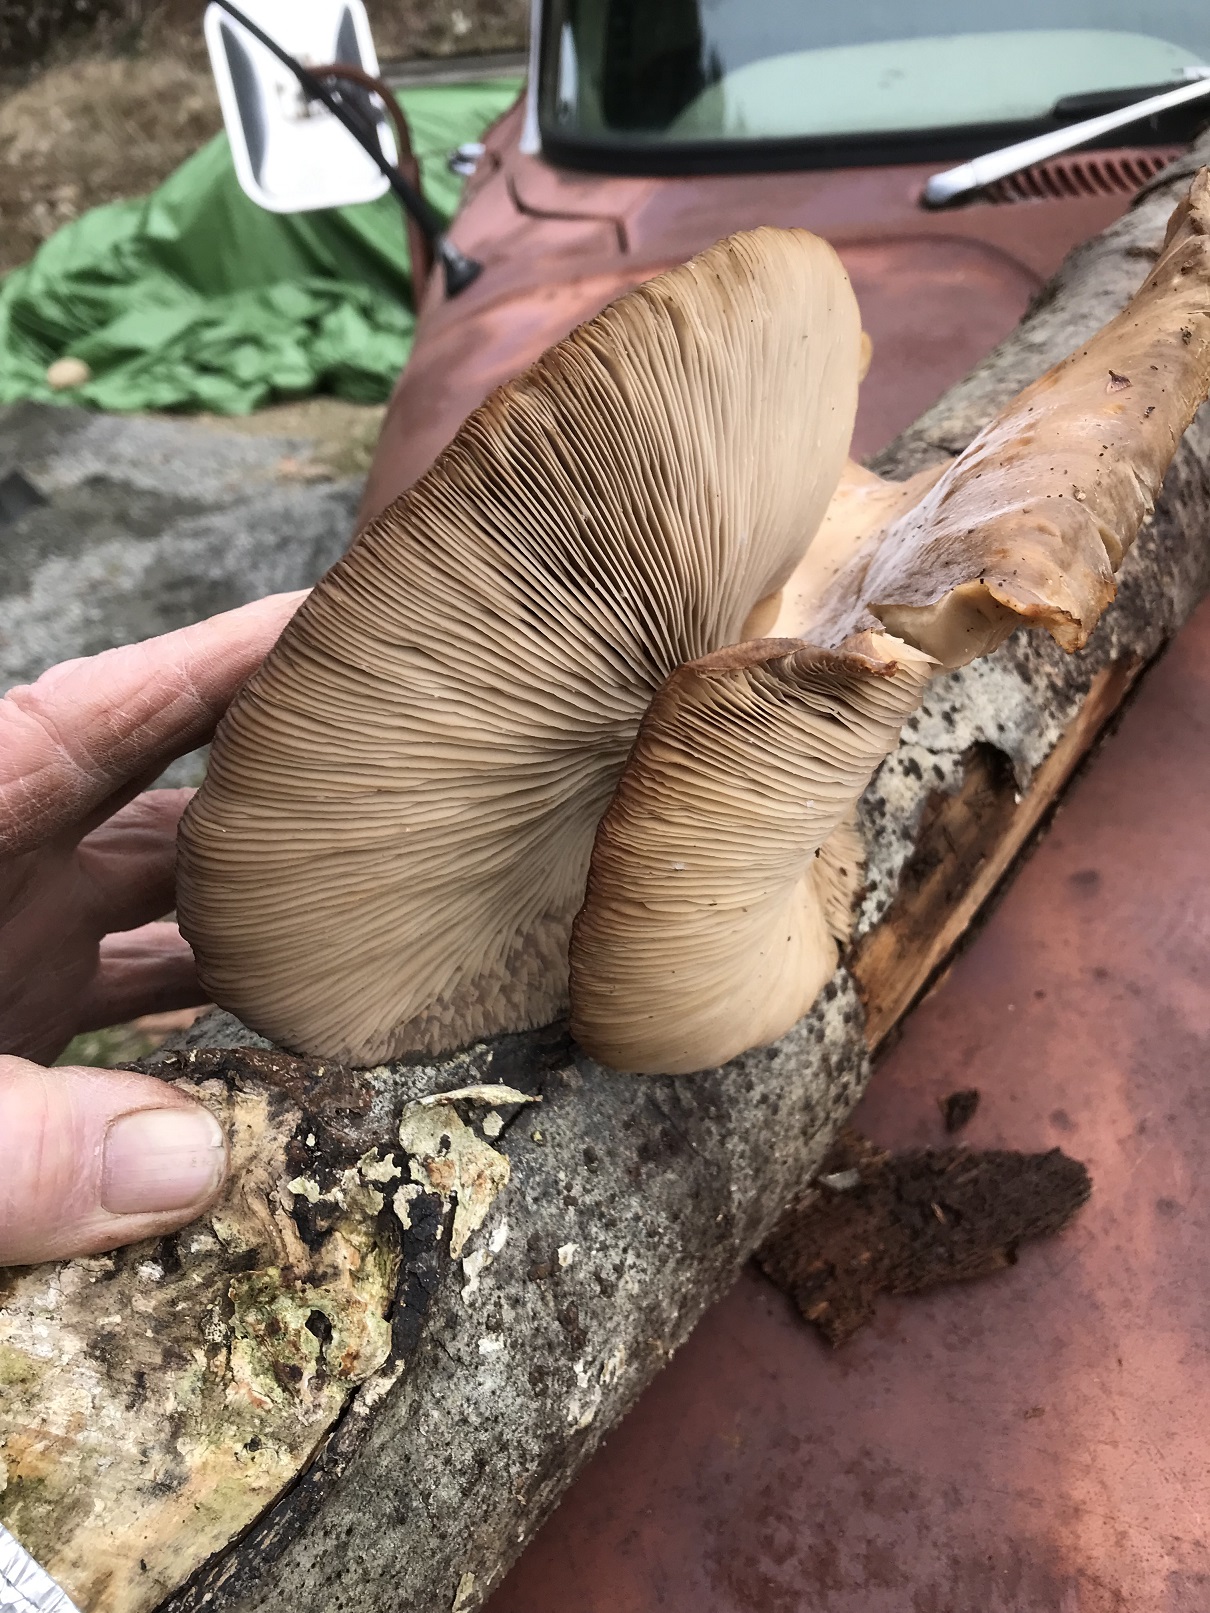 mushroom log demo at church